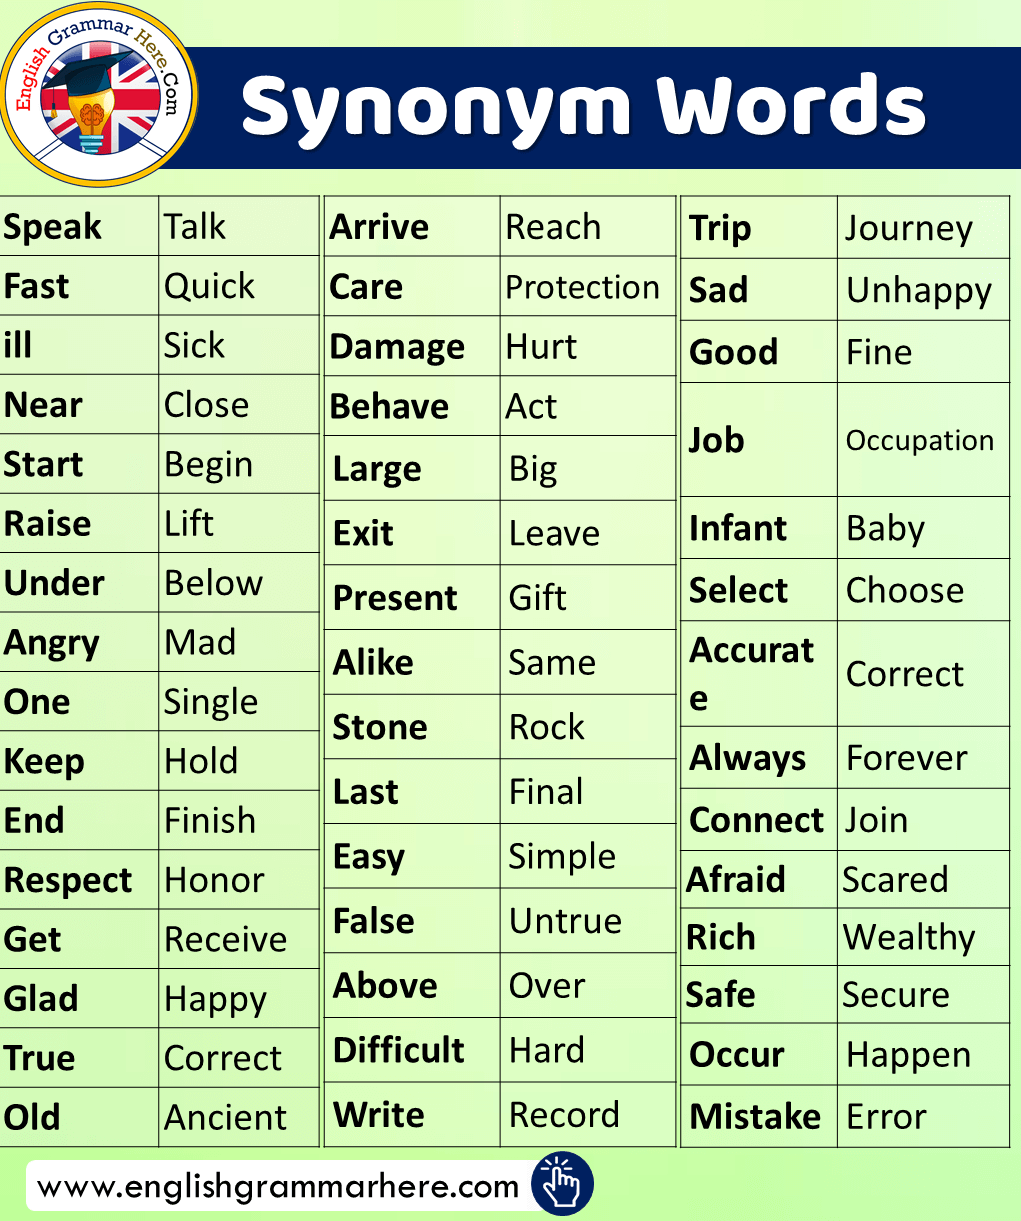 English Synonym Words List